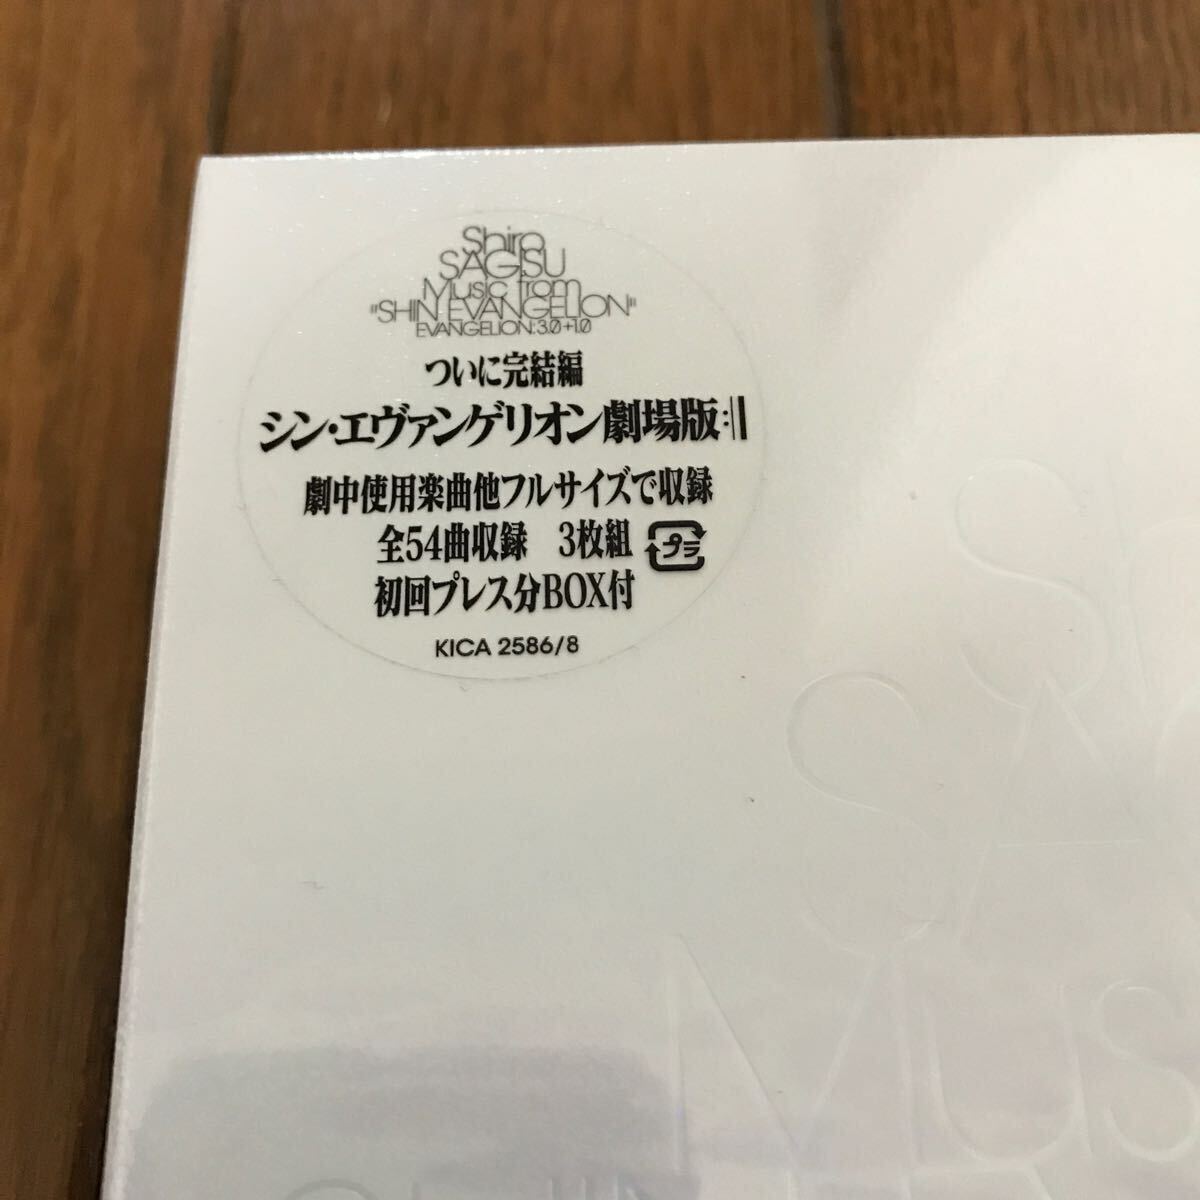 シン・エヴァンゲリオン サウンドトラック Shiro SAGISU Music from “SHIN EVANGELION” 初回盤 BOX付 新品未開封 鷺巣詩郎_画像3